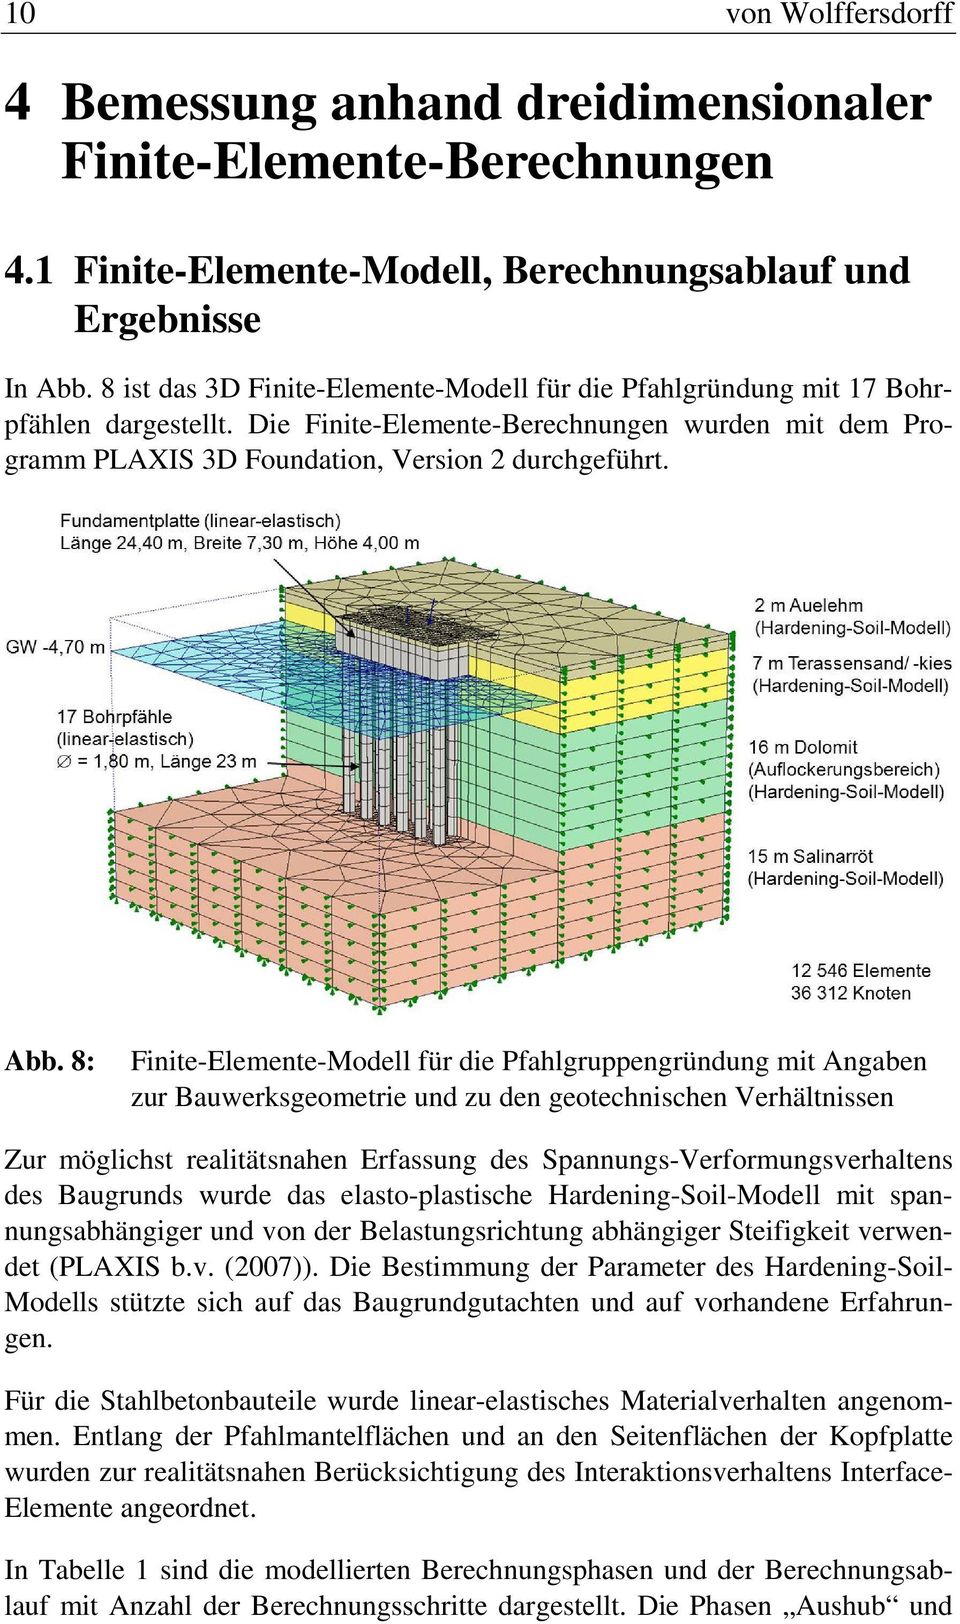 8: Finite-Elemente-Modell für die Pfahlgruppengründung mit Angaben zur Bauwerksgeometrie und zu den geotechnischen Verhältnissen Zur möglichst realitätsnahen Erfassung des